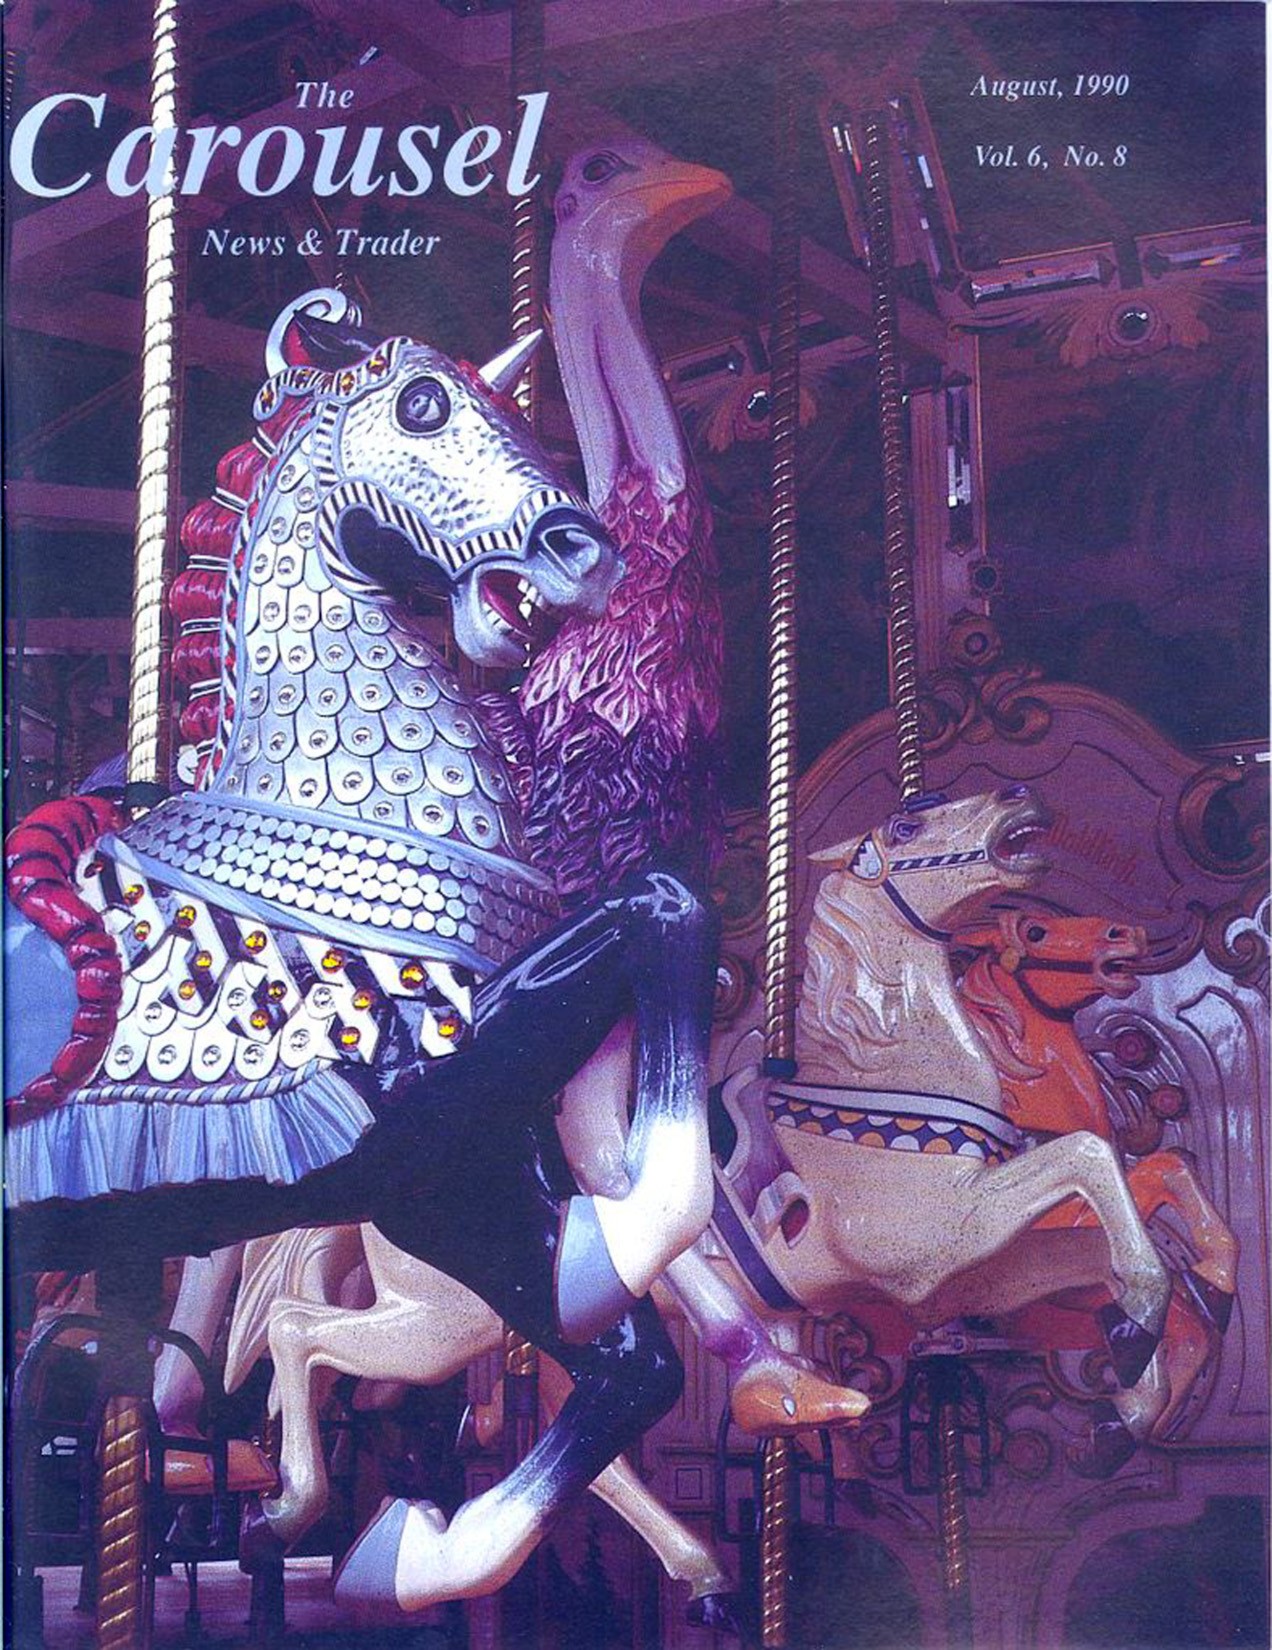 Carousel-News_08_1990-Golden-Gate-Park-Herschell-Spillman